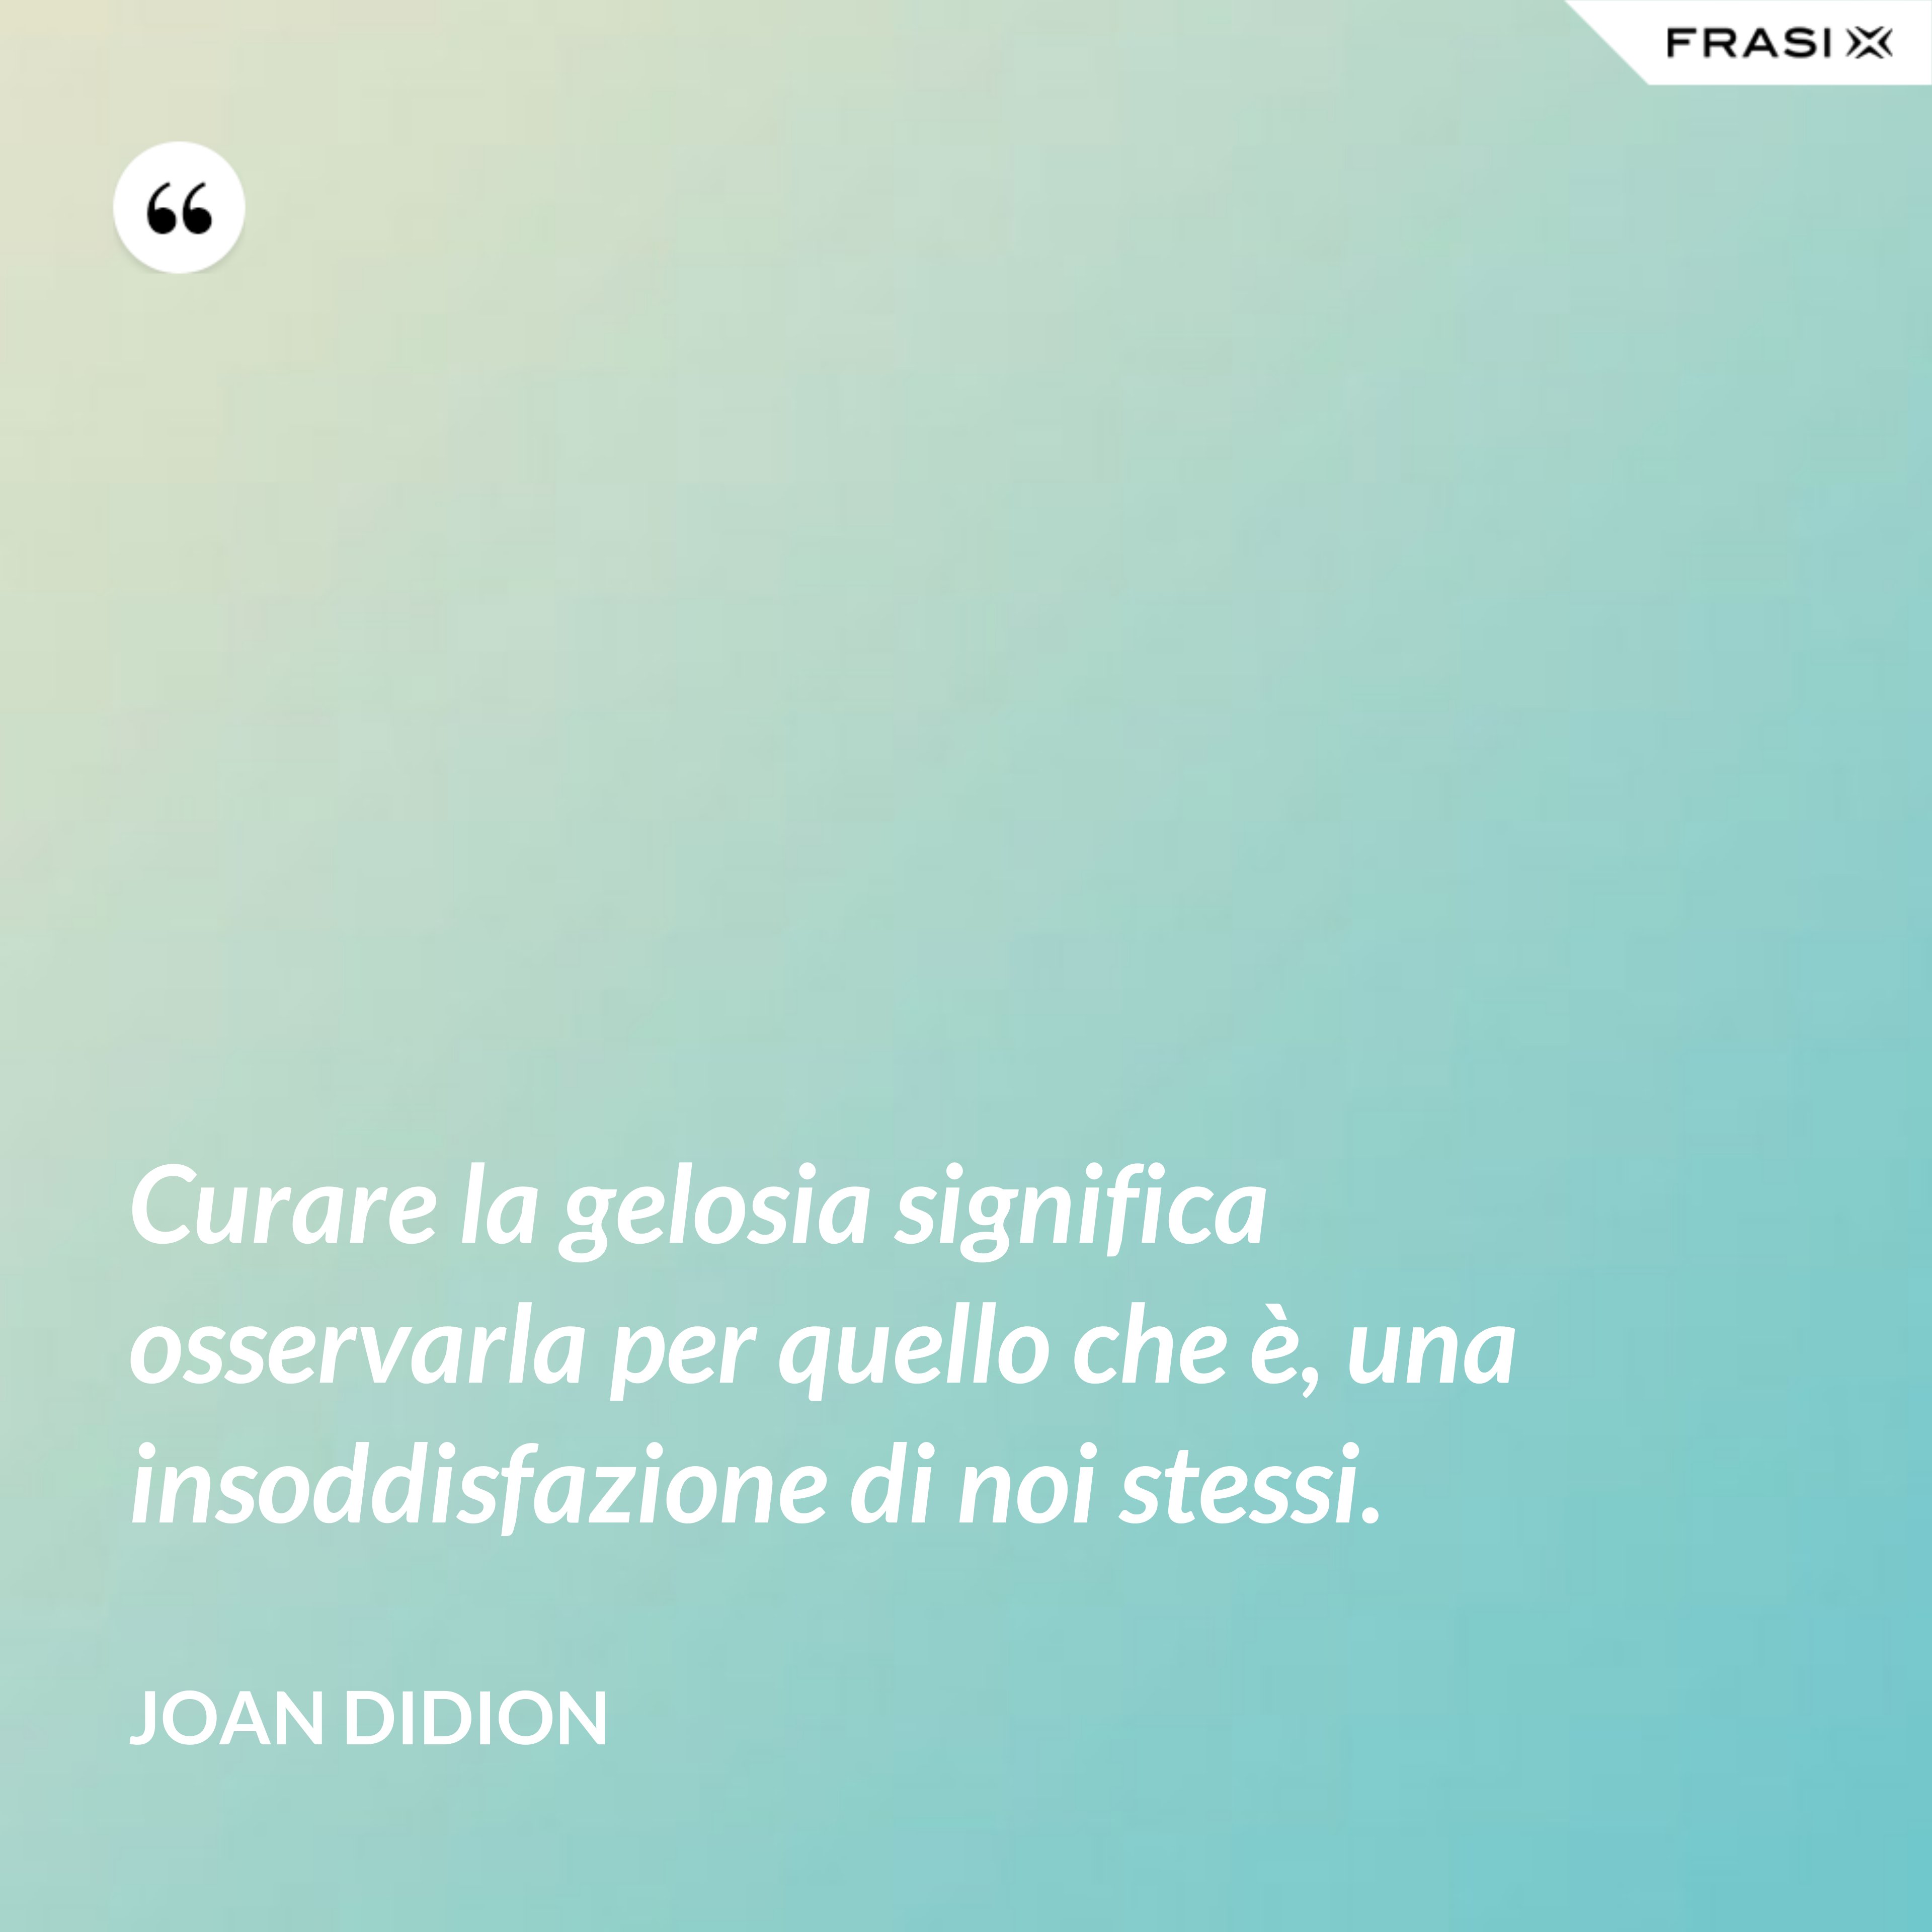 Curare la gelosia significa osservarla per quello che è, una insoddisfazione di noi stessi. - Joan Didion